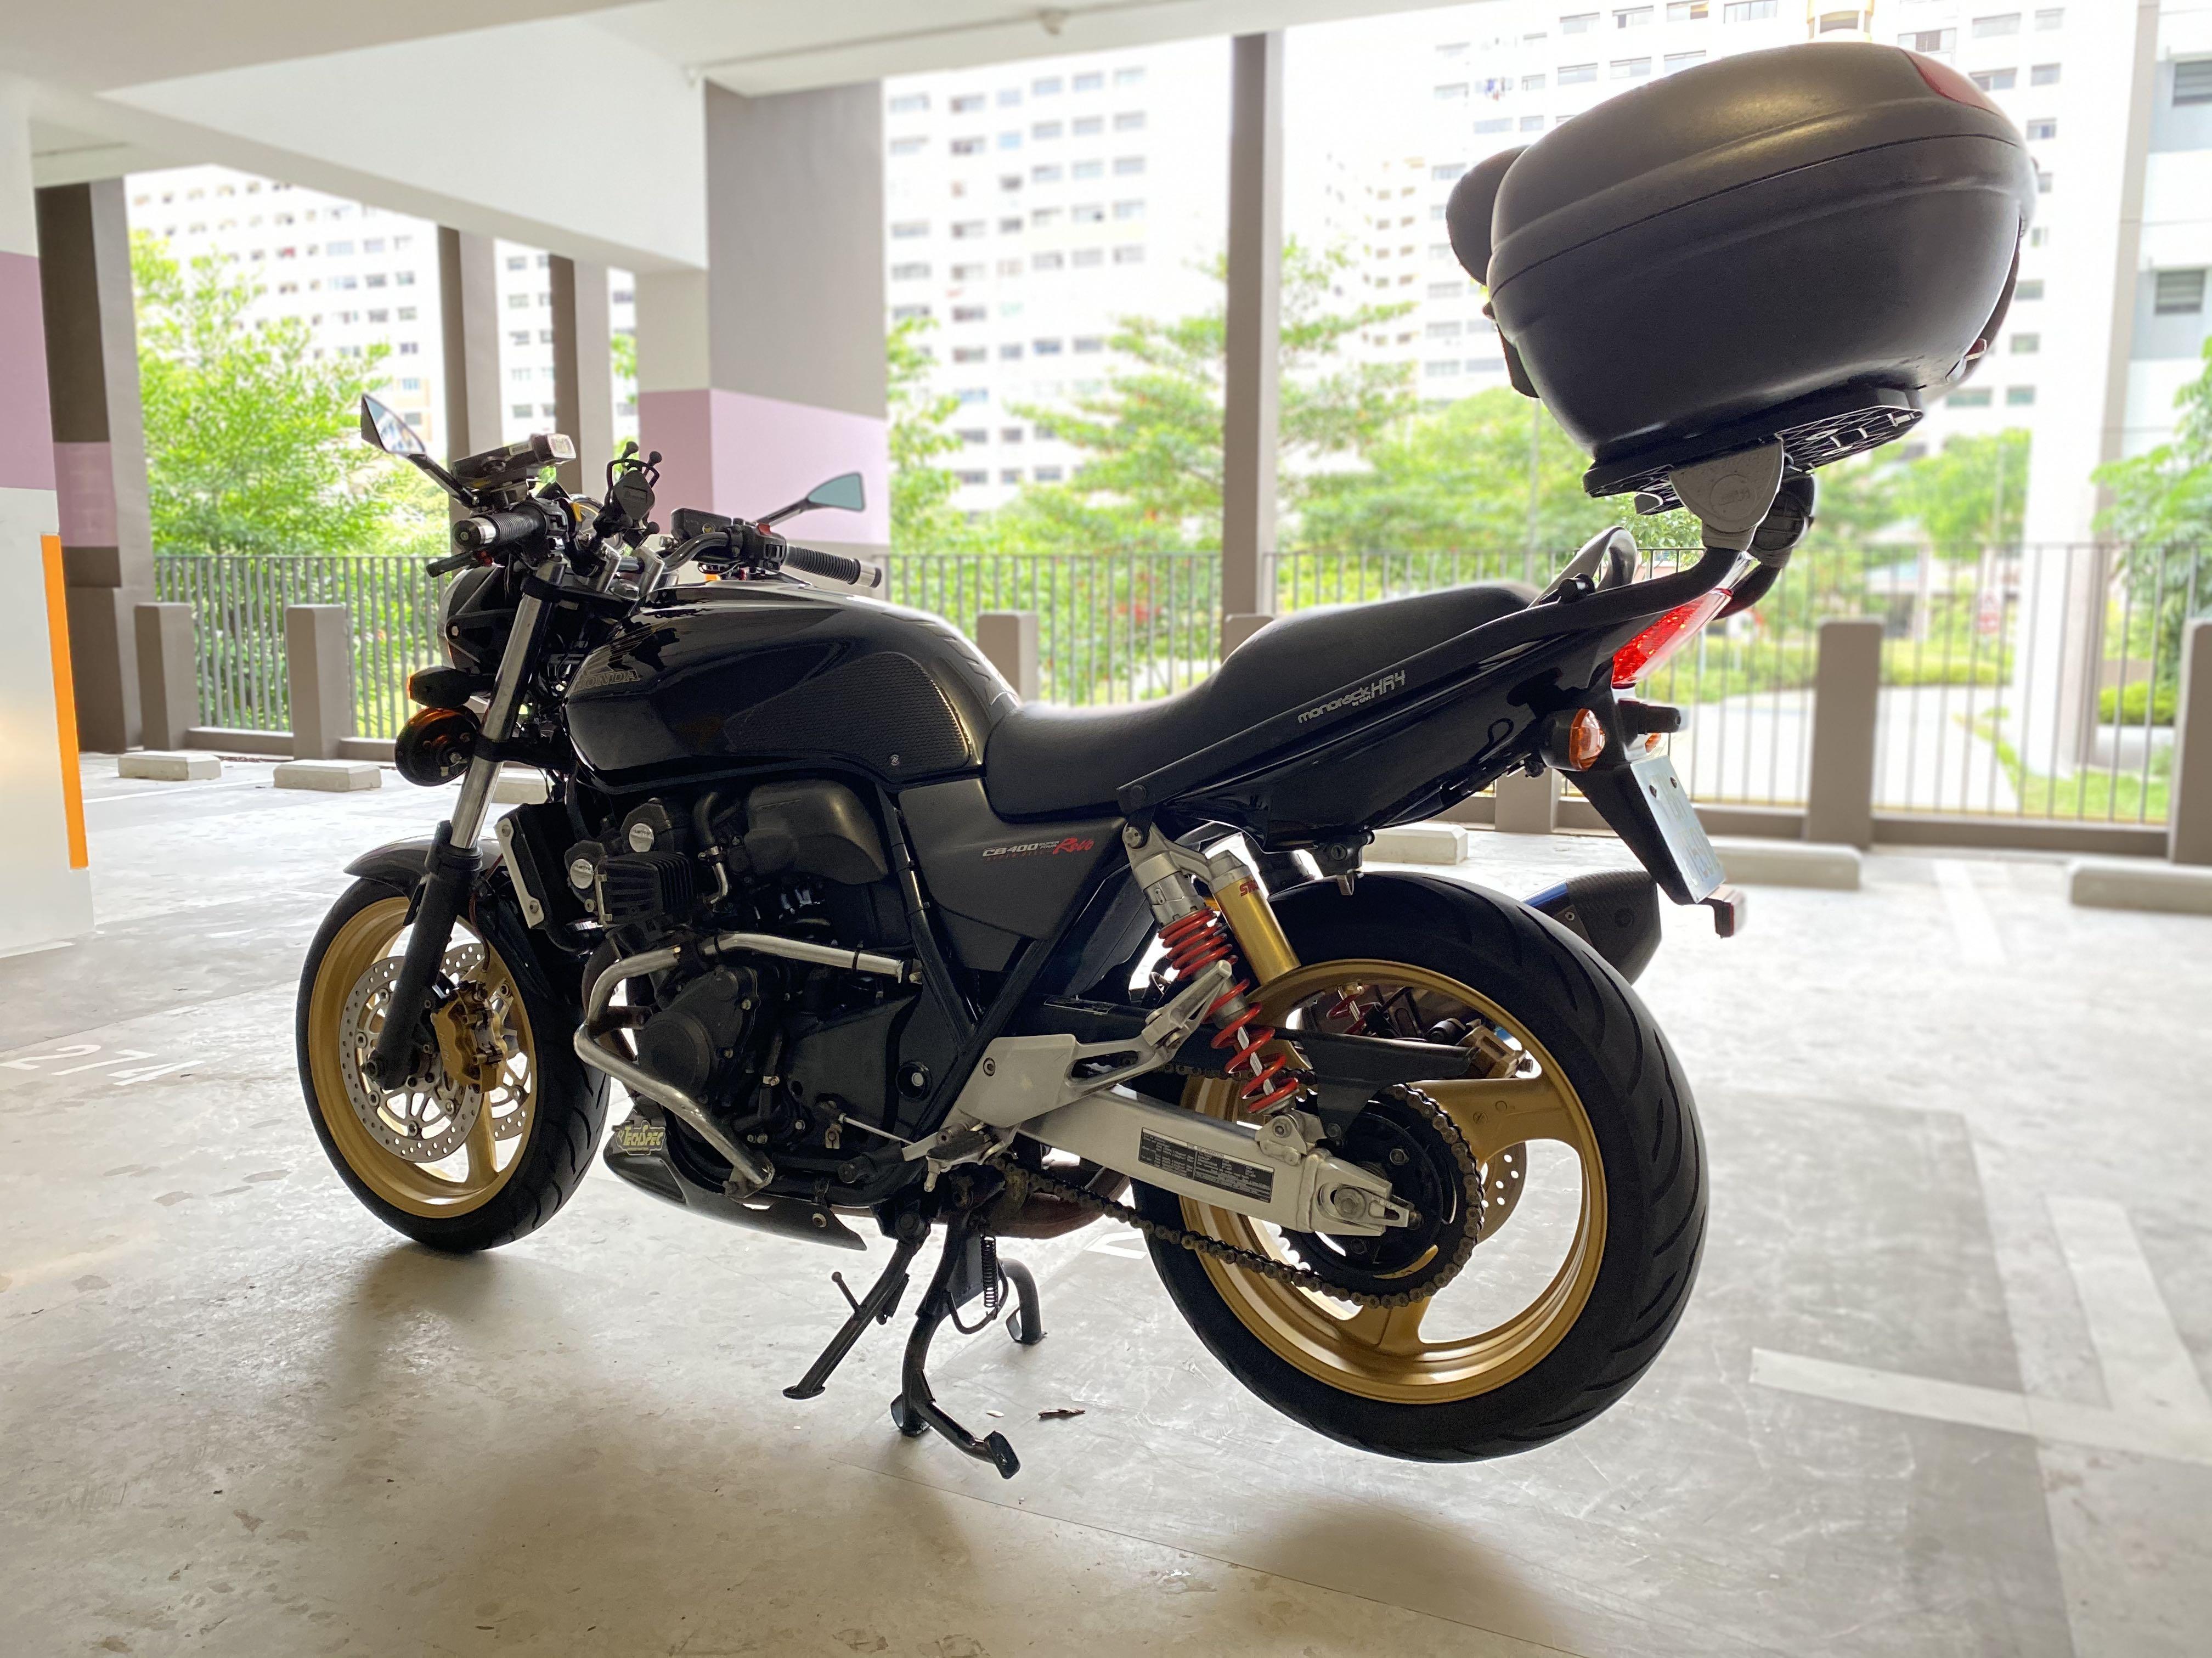 Honda CB400 Super 4 Revo 2013 - For Sale - Class 2A (201cc to 400cc) -  SingaporeBikes.com